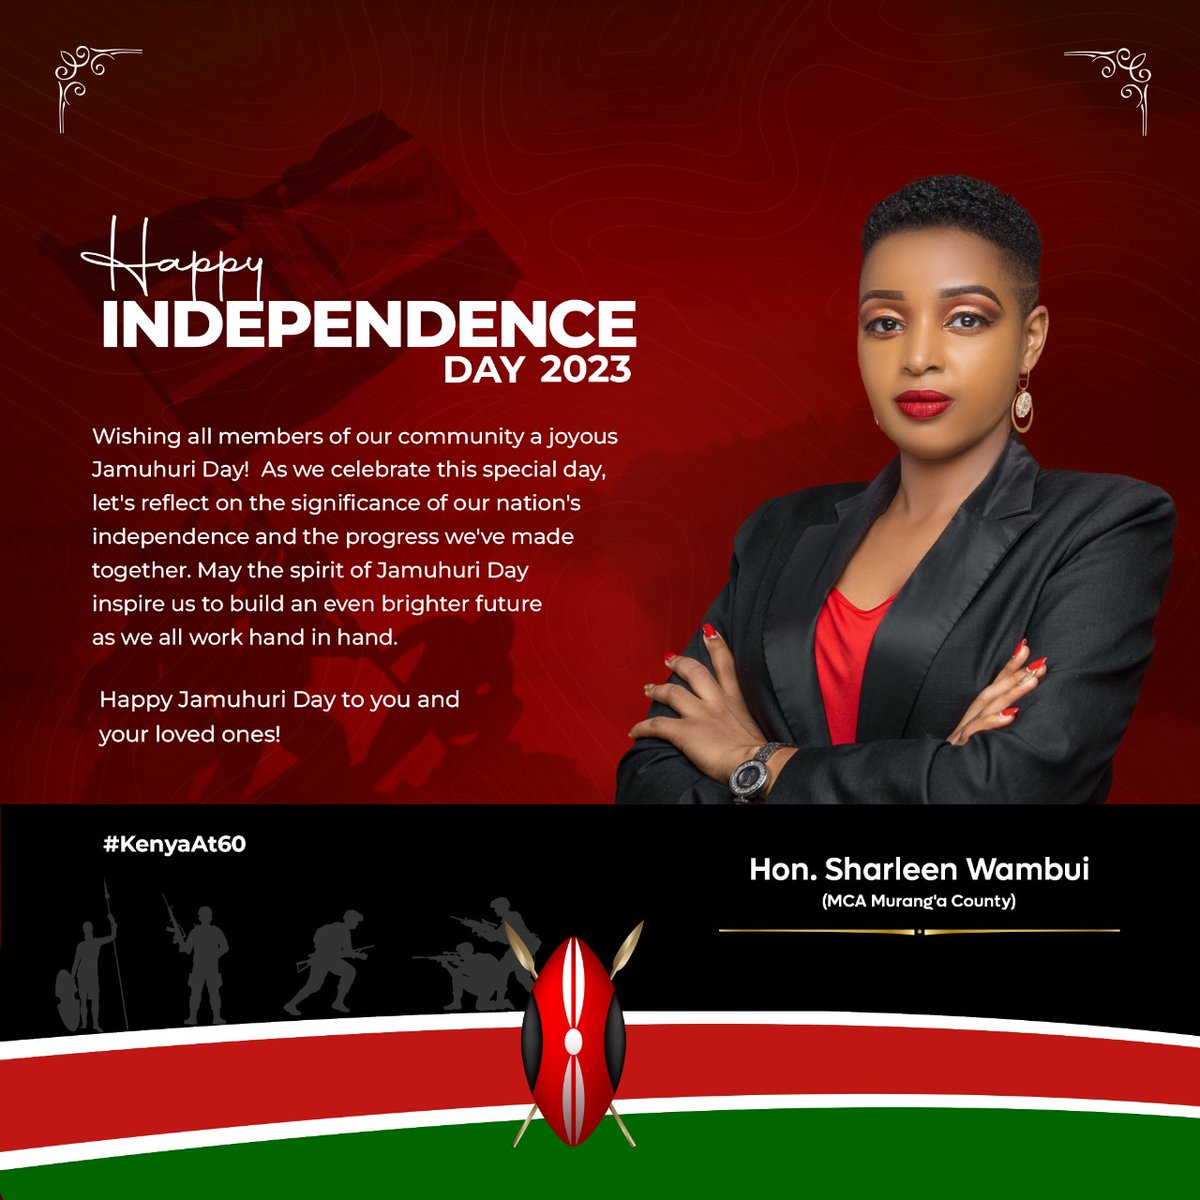 Happy Jamhuri day fellow Kenyans. Am proudly Kenyan 🇰🇪 #AhugForRuto #KenyaAt60 #Kenya